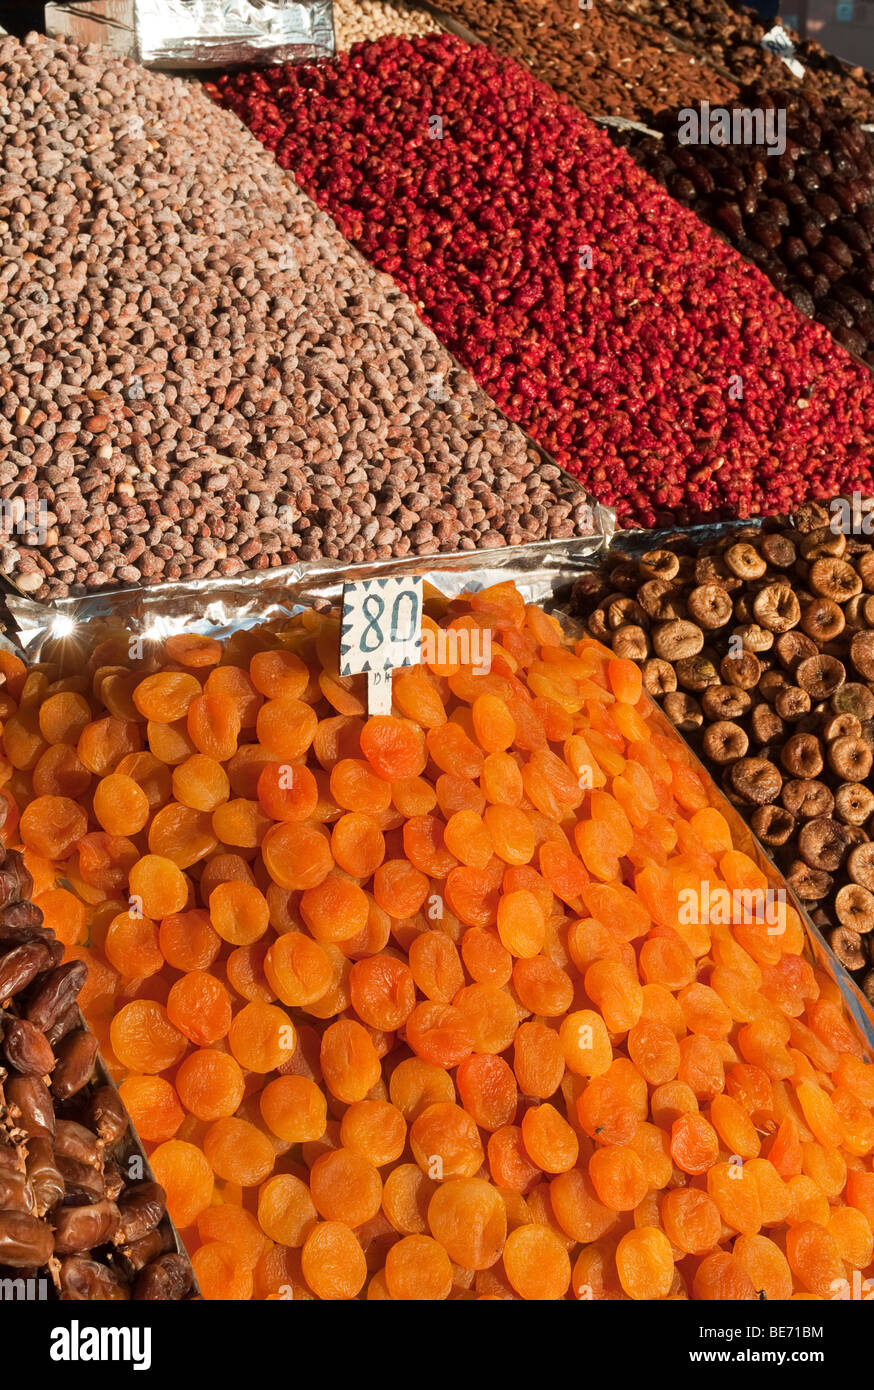 La frutta secca, i dadi e le date in un mercato, Djemaa el Fna a Marrakech, Marocco, Africa Foto Stock